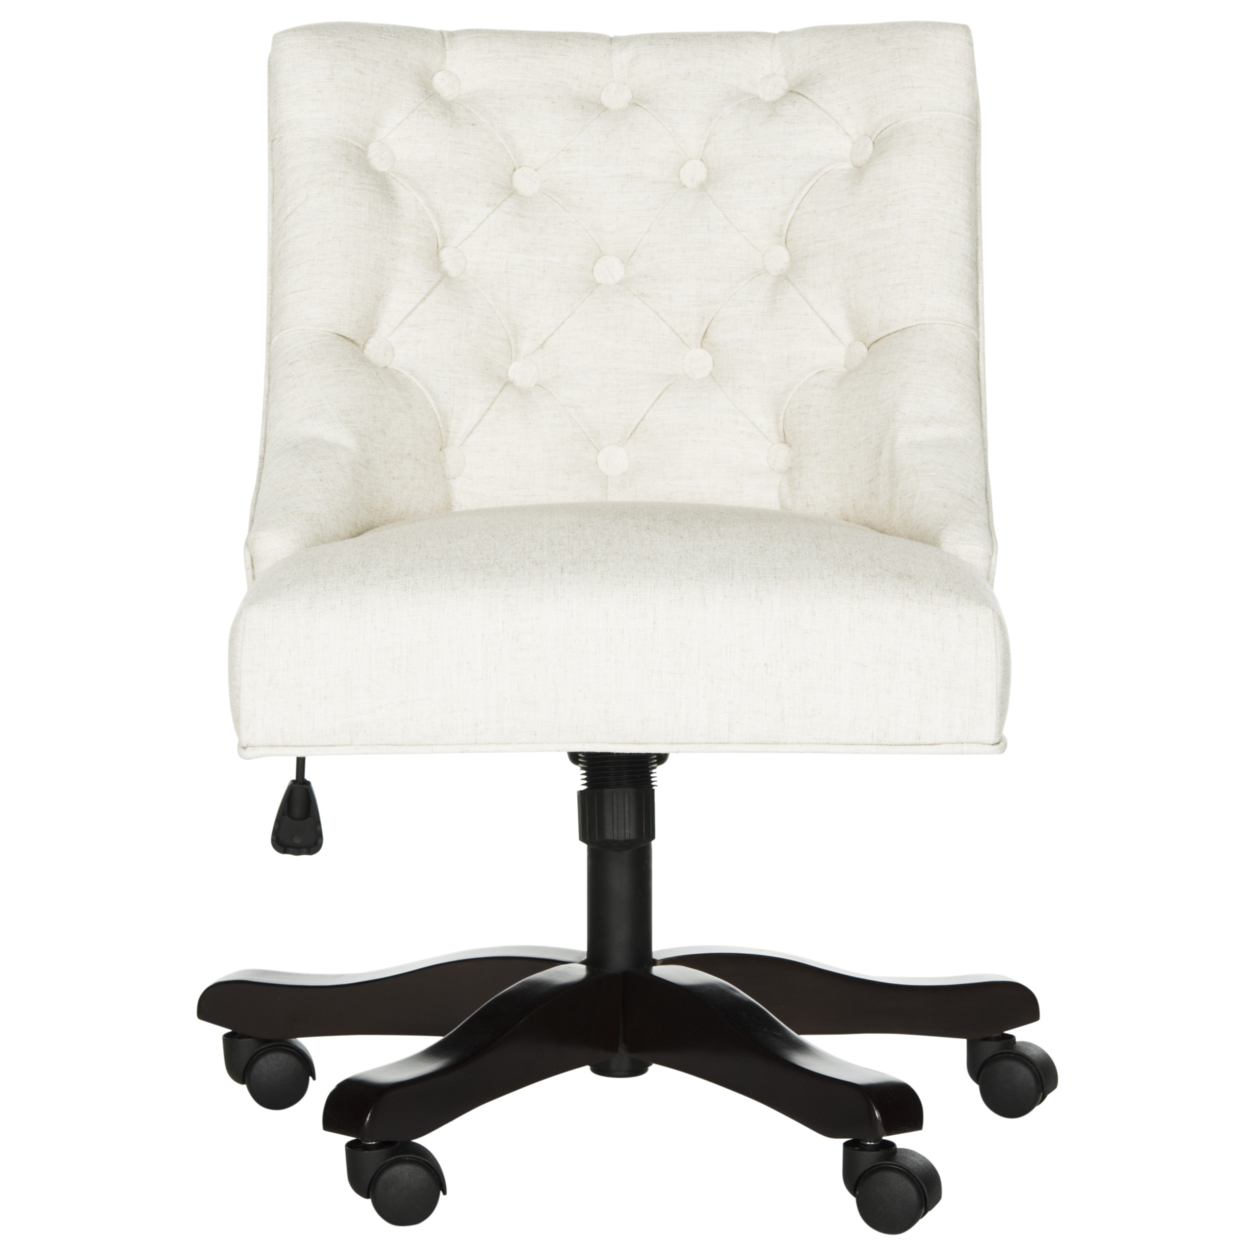 SAFAVIEH Soho Tufted Linen Swivel Desk Chair Creme